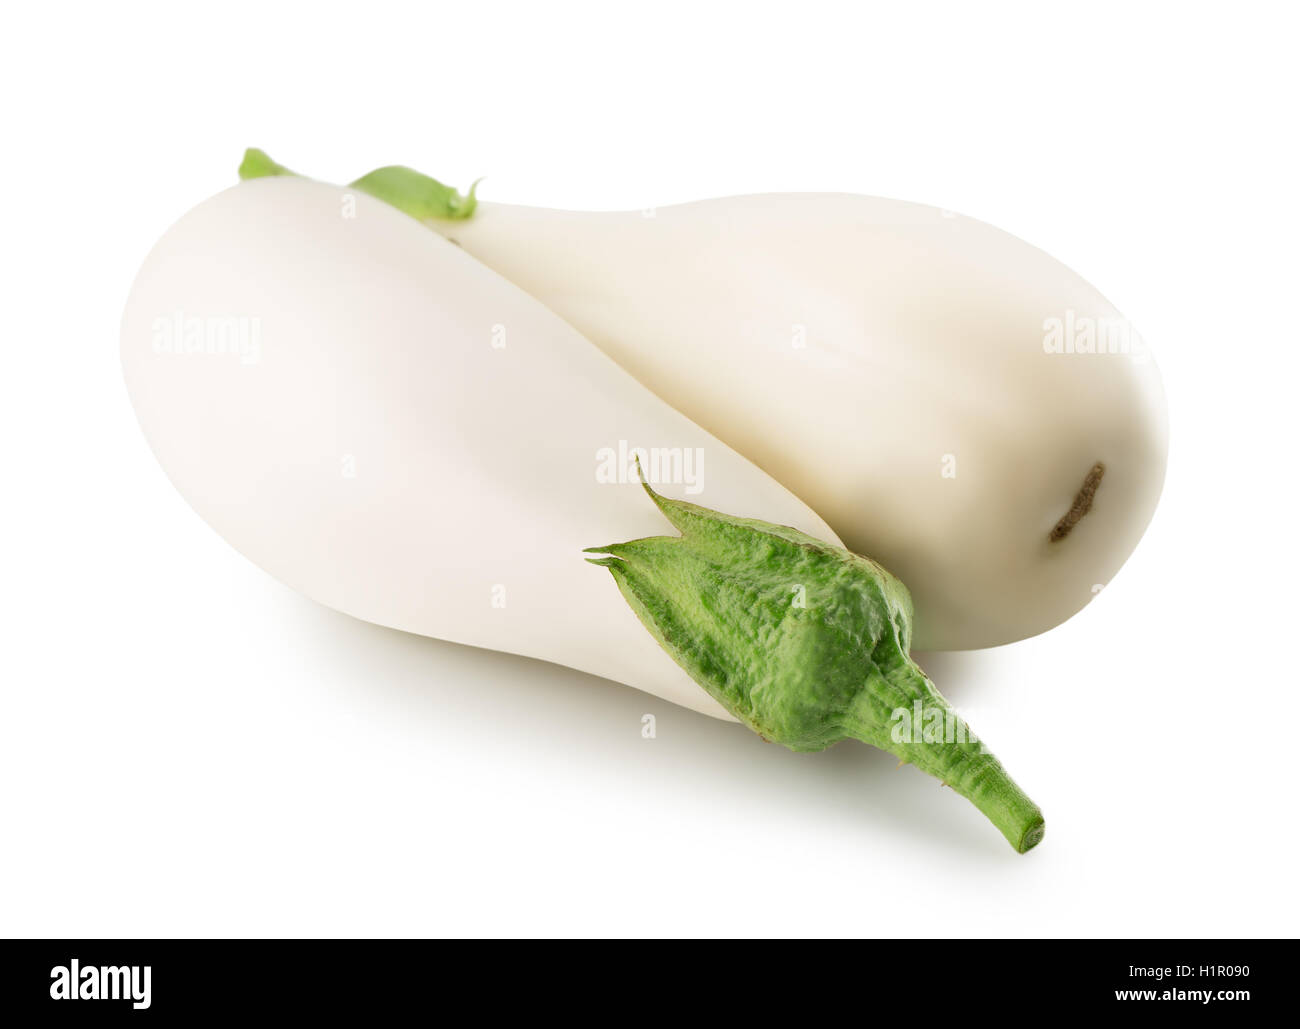 white eggplant isolated on the white background. Stock Photo